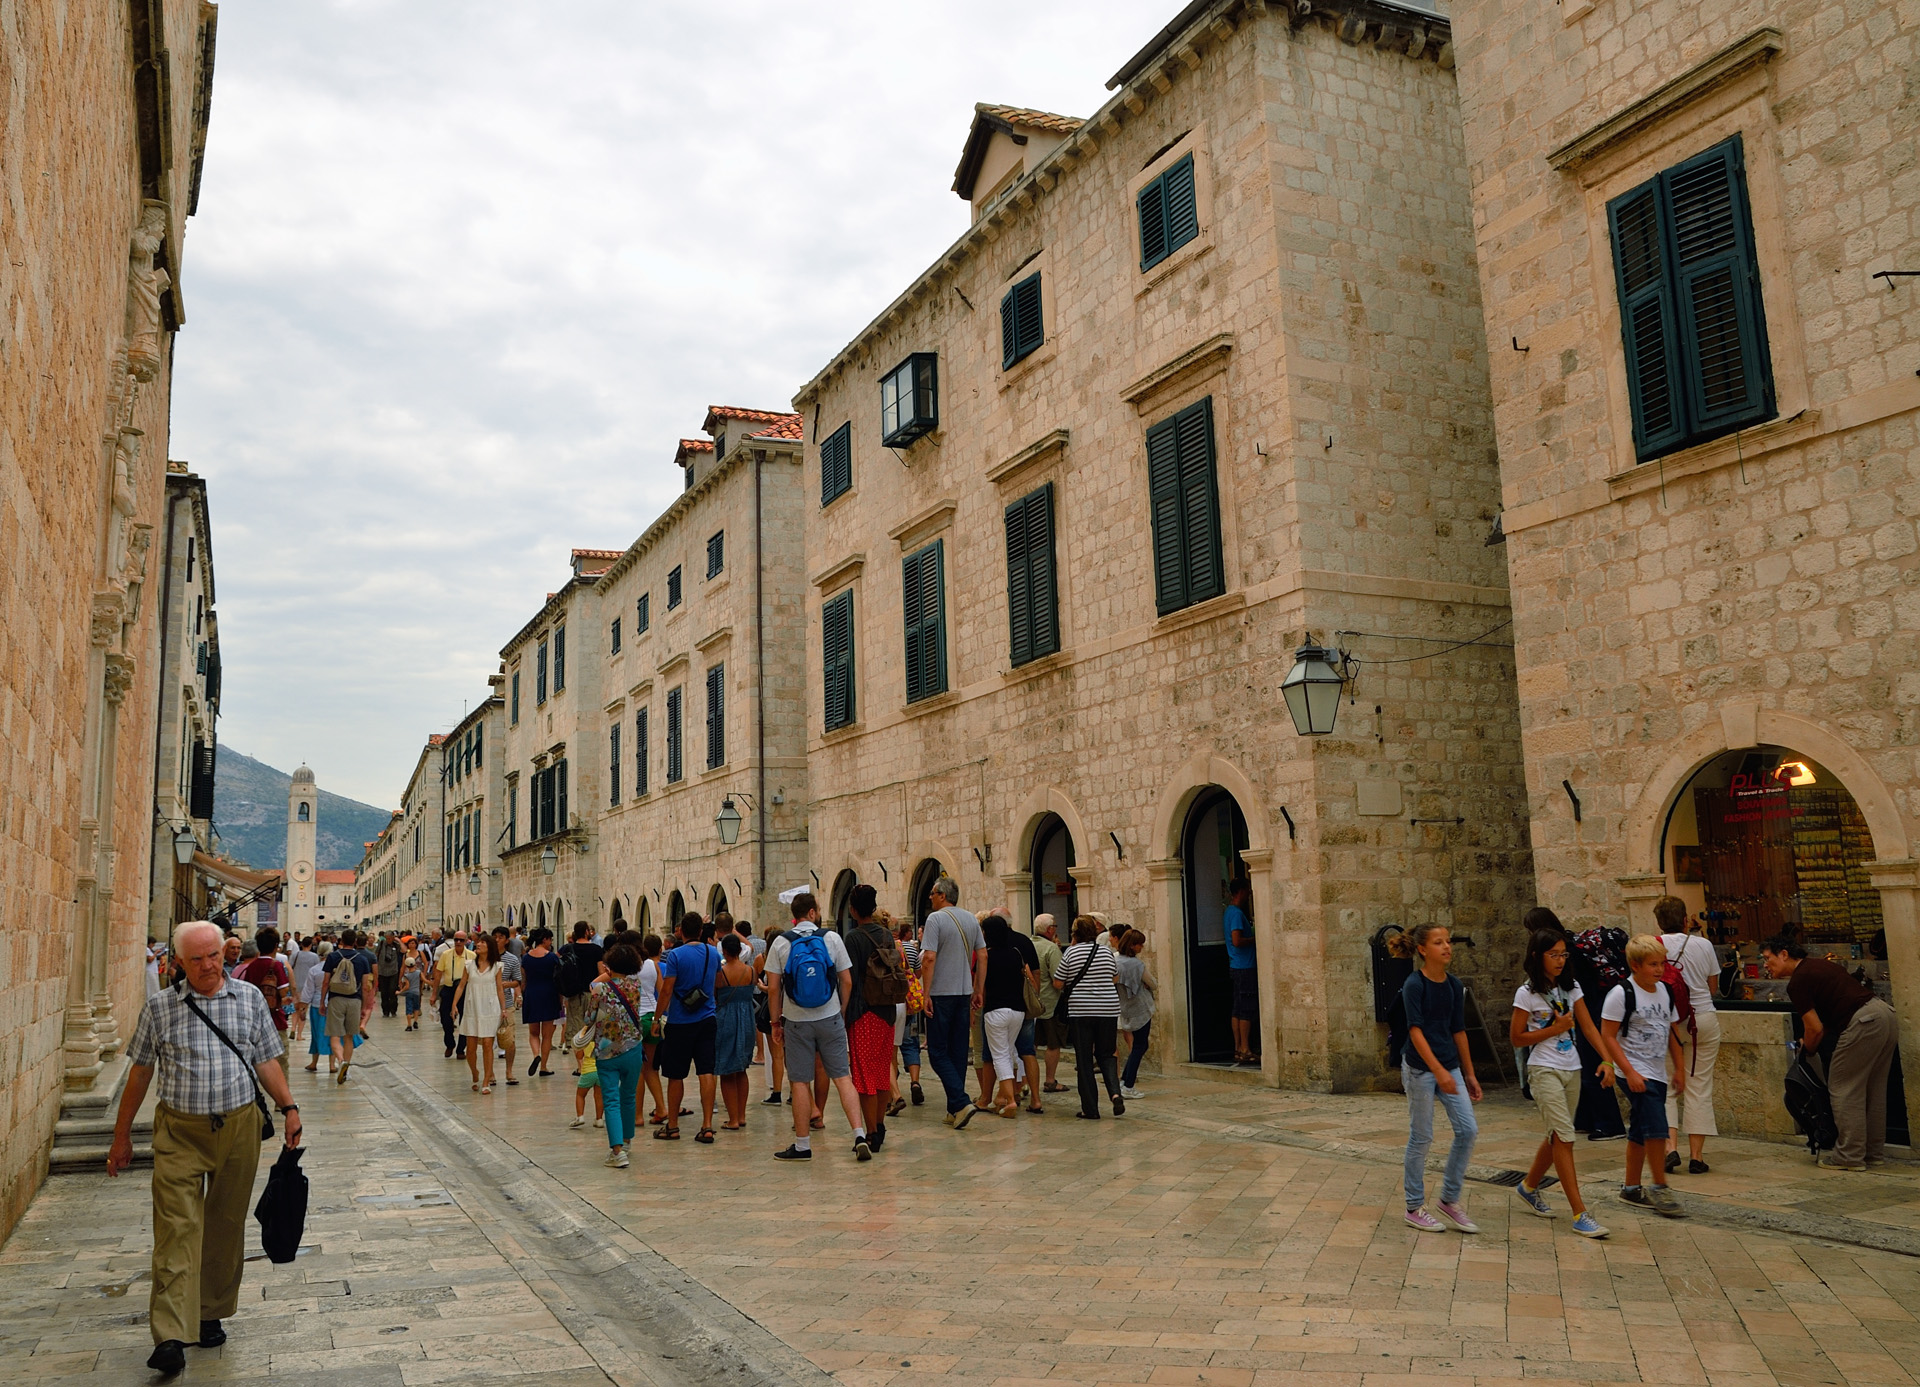 Wir sind unterwegs auf dem Stradun, die Mainstreet in Dubrovnik. Diese Straße ist zugleich die kürzeste Verbindung zwischen dem westlichen und dem östlichen Stadttor. Sie entstand am Ende des 11. Jahrhunderts. Dort finden heute alle großen Festveranstaltungen und Prozessionen statt, aber diese Straße ist zugleich die Handelsarterie des alten Stadtkerns von Dubrovnik...